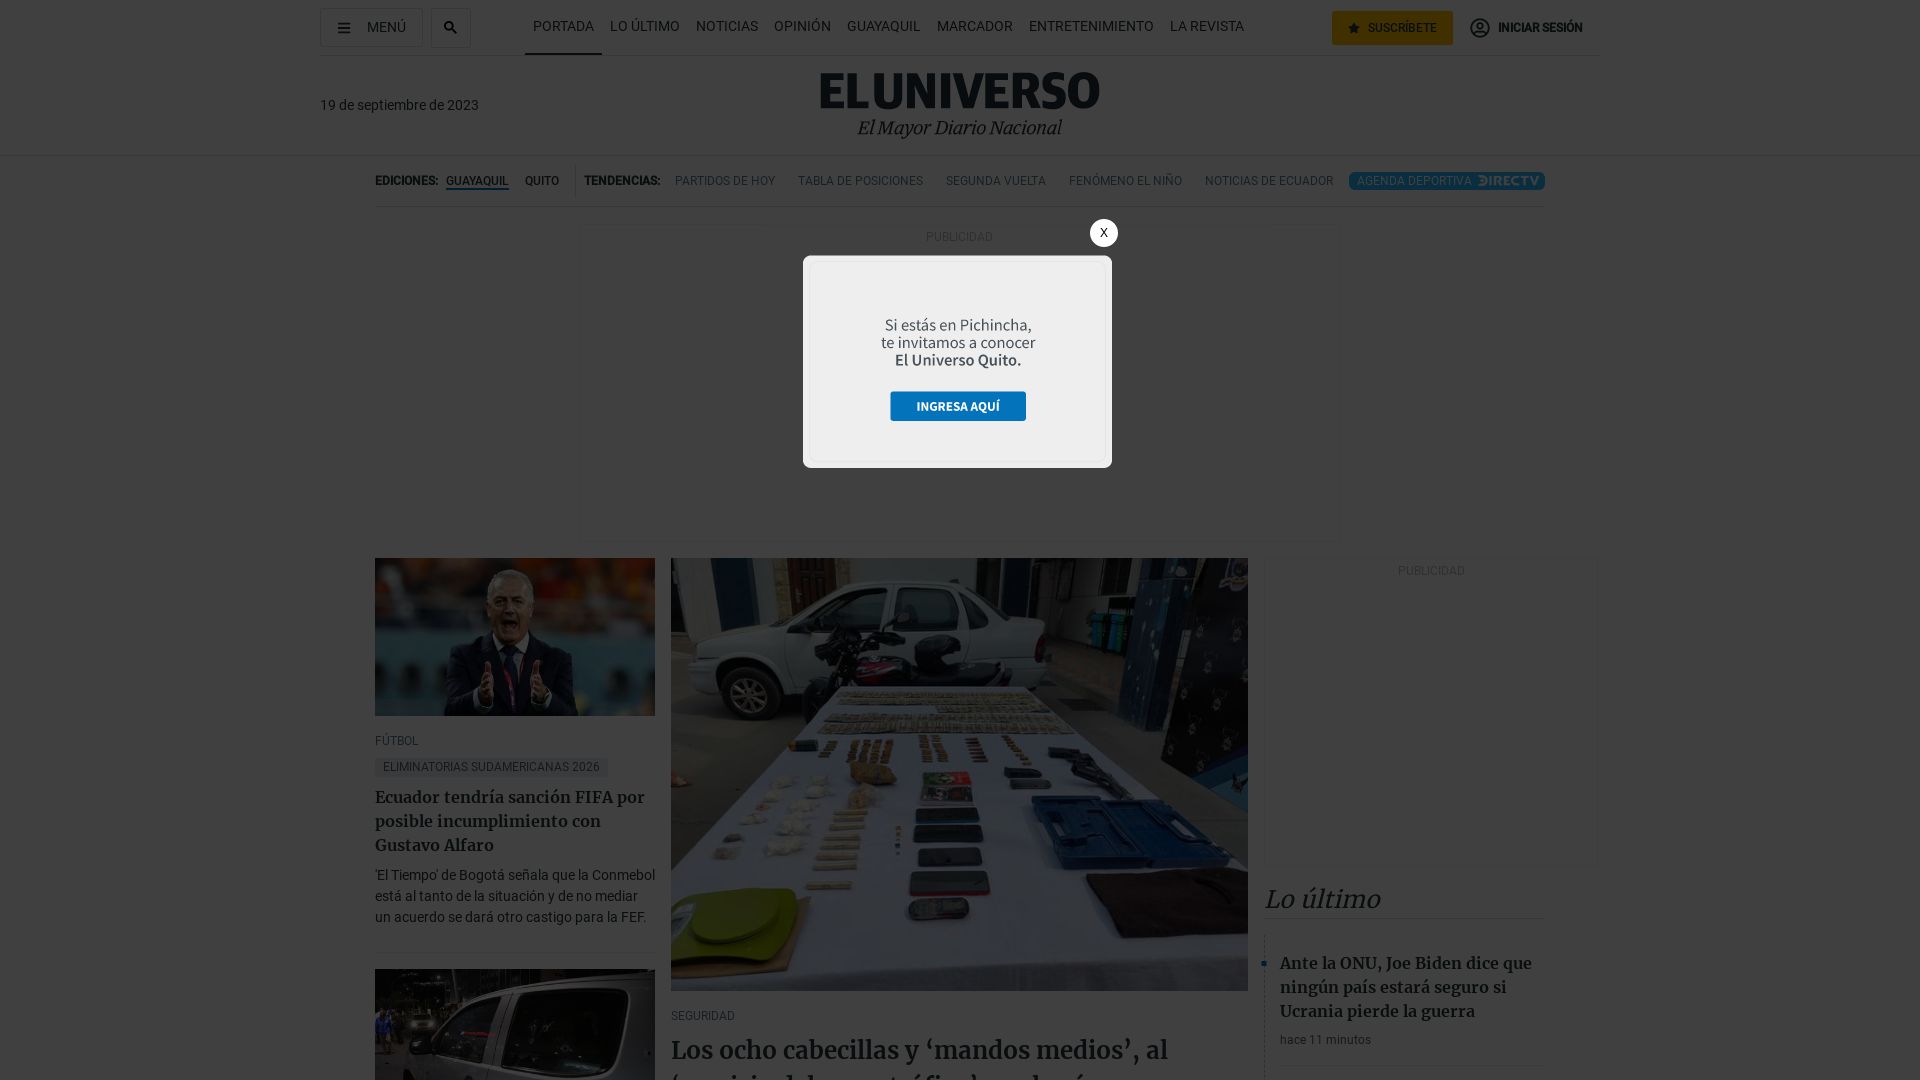 Website status eluniverso.com is   ONLINE